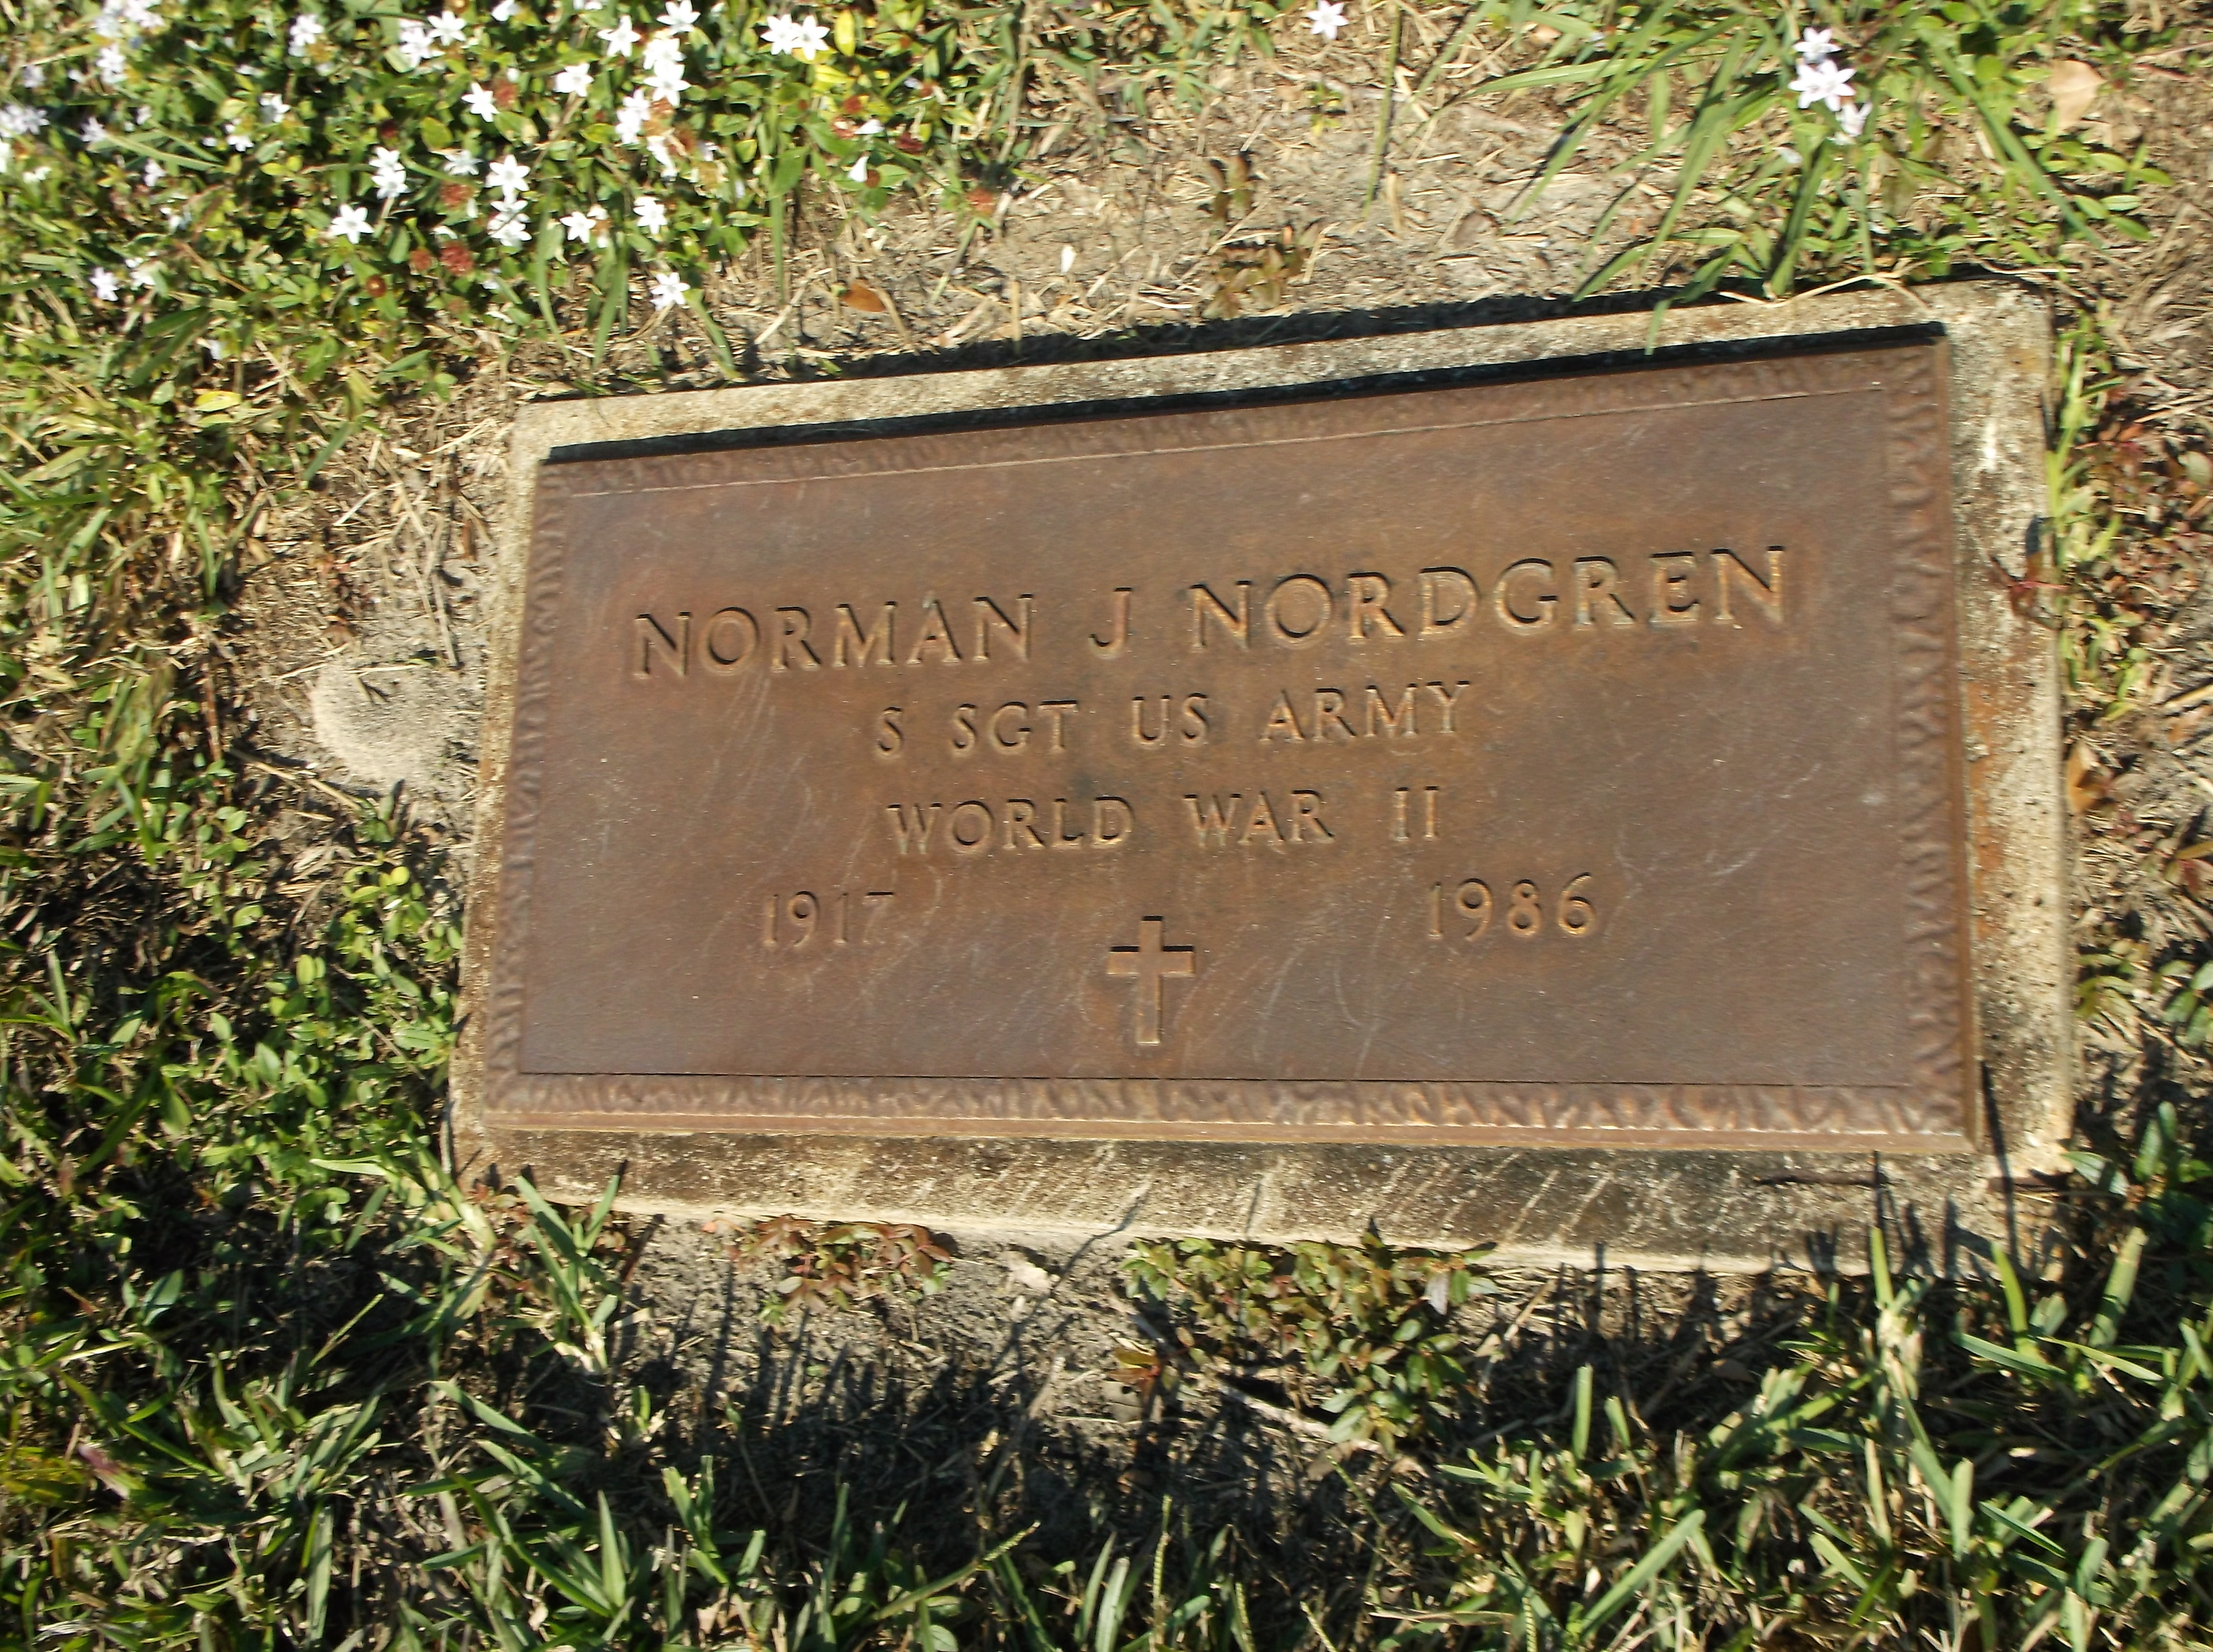 Norman J Nordgren